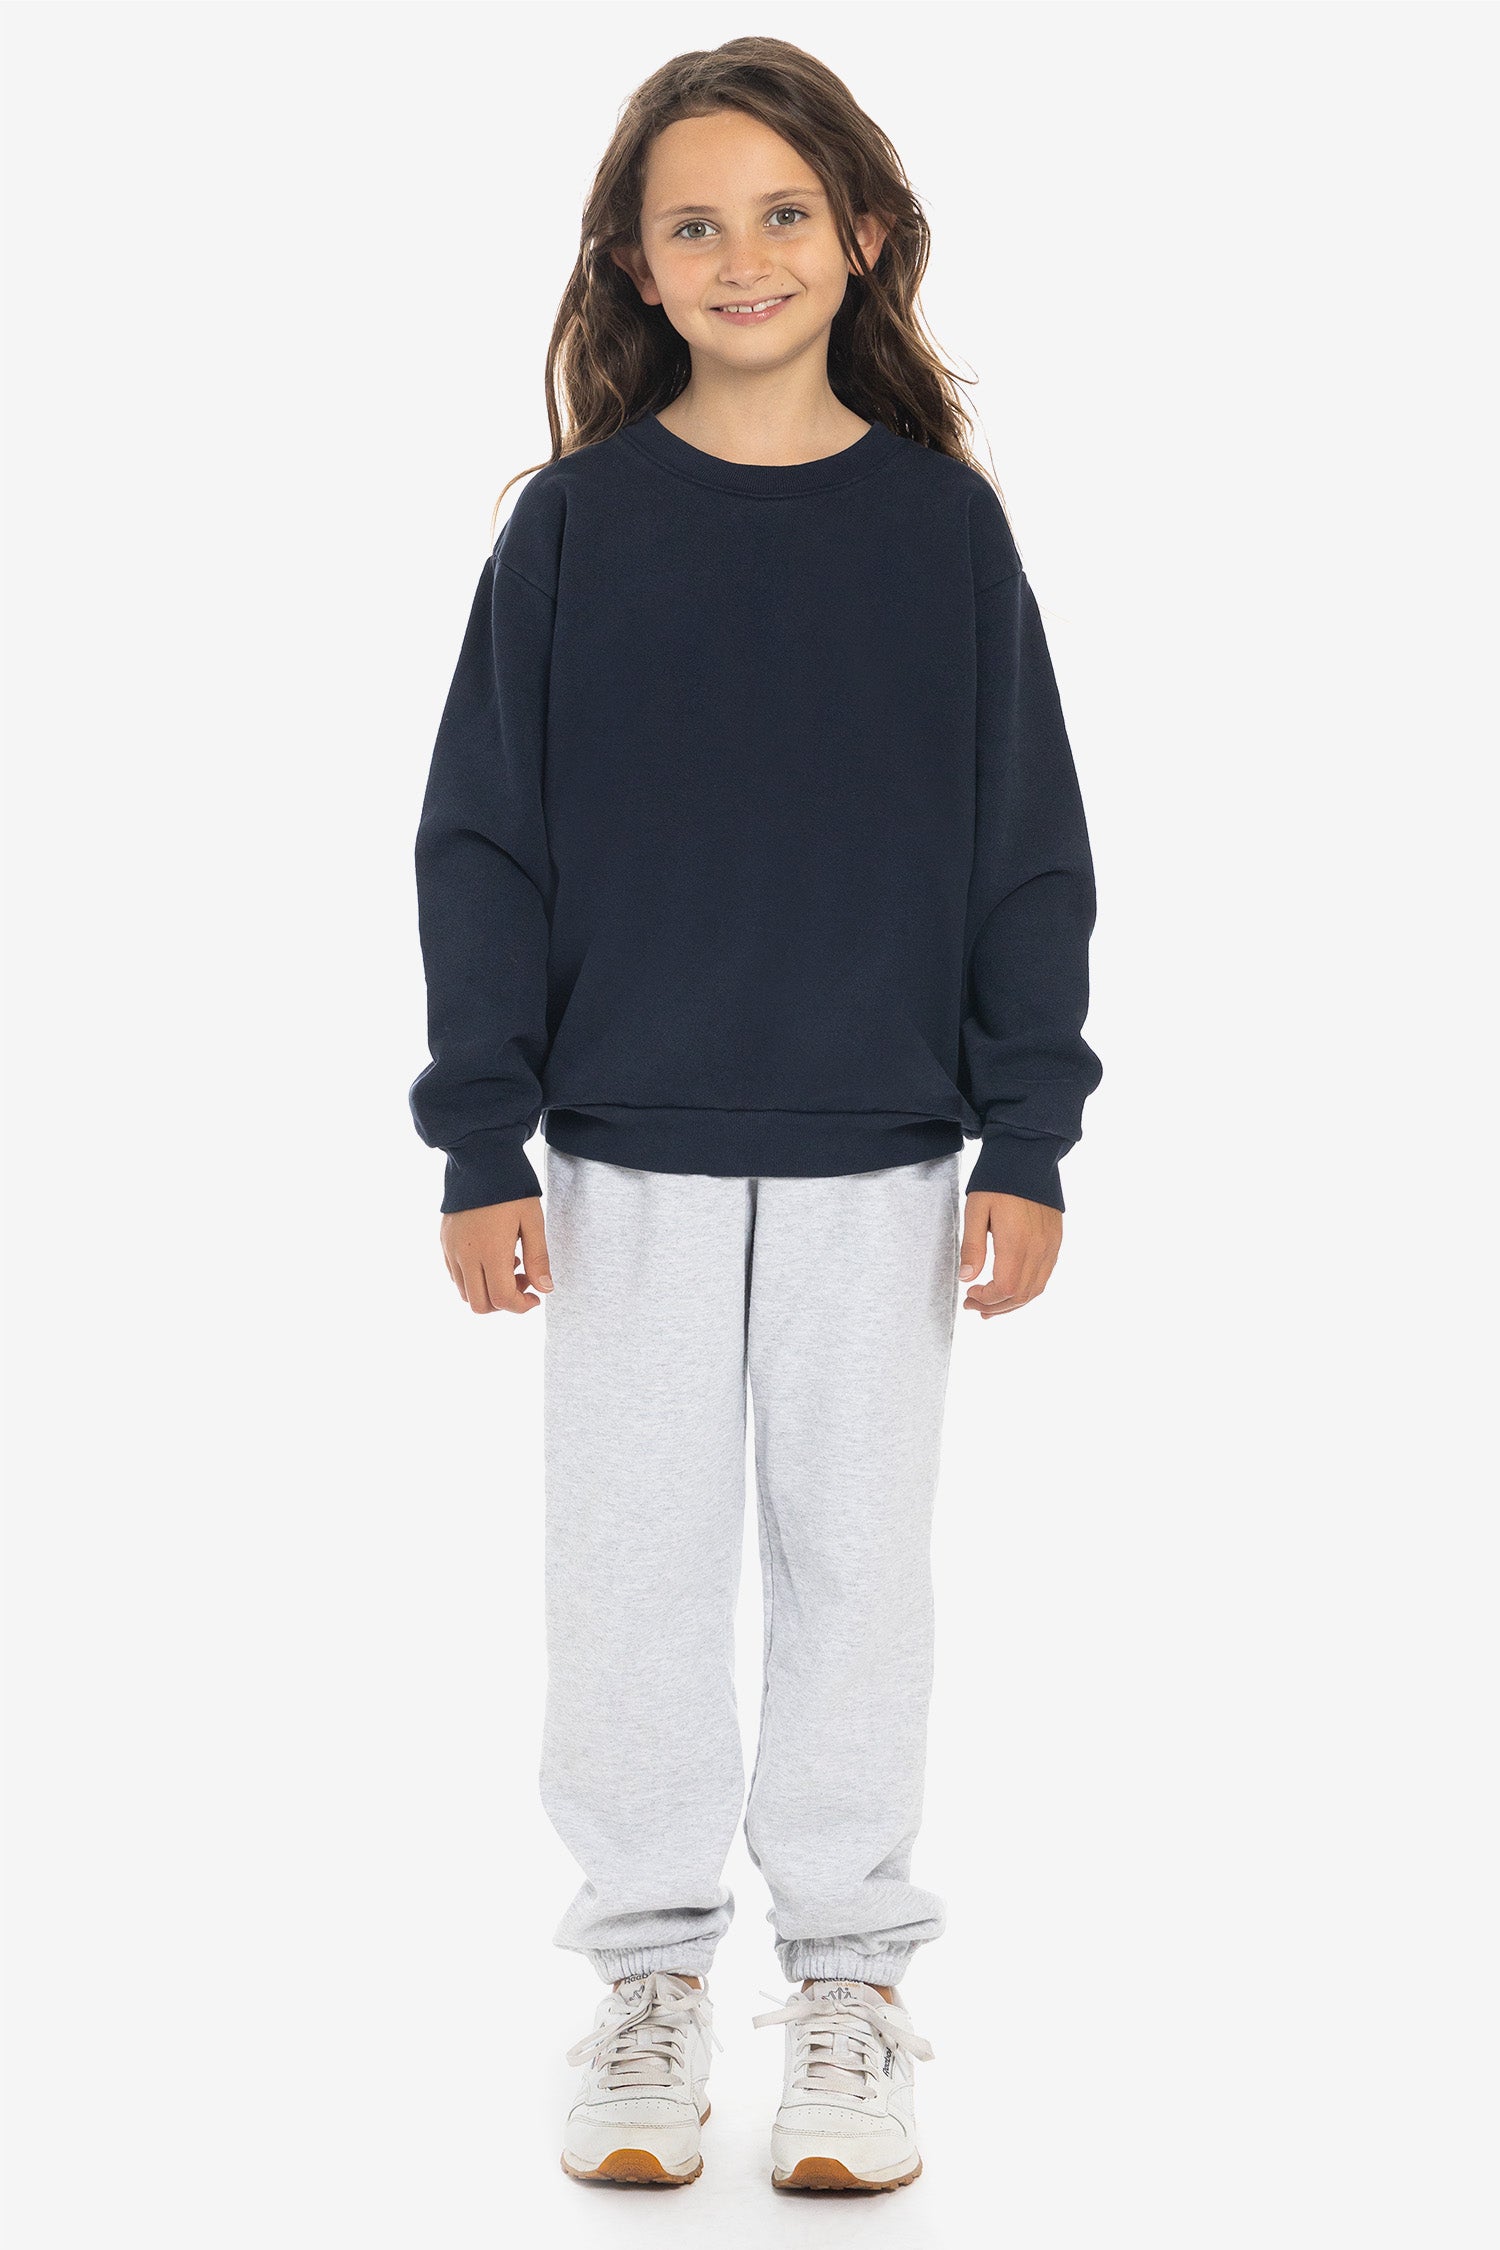 Garment Crew Kids Heavy Angeles HF107GD – Los Sweatshirt Fleece - Apparel Dye